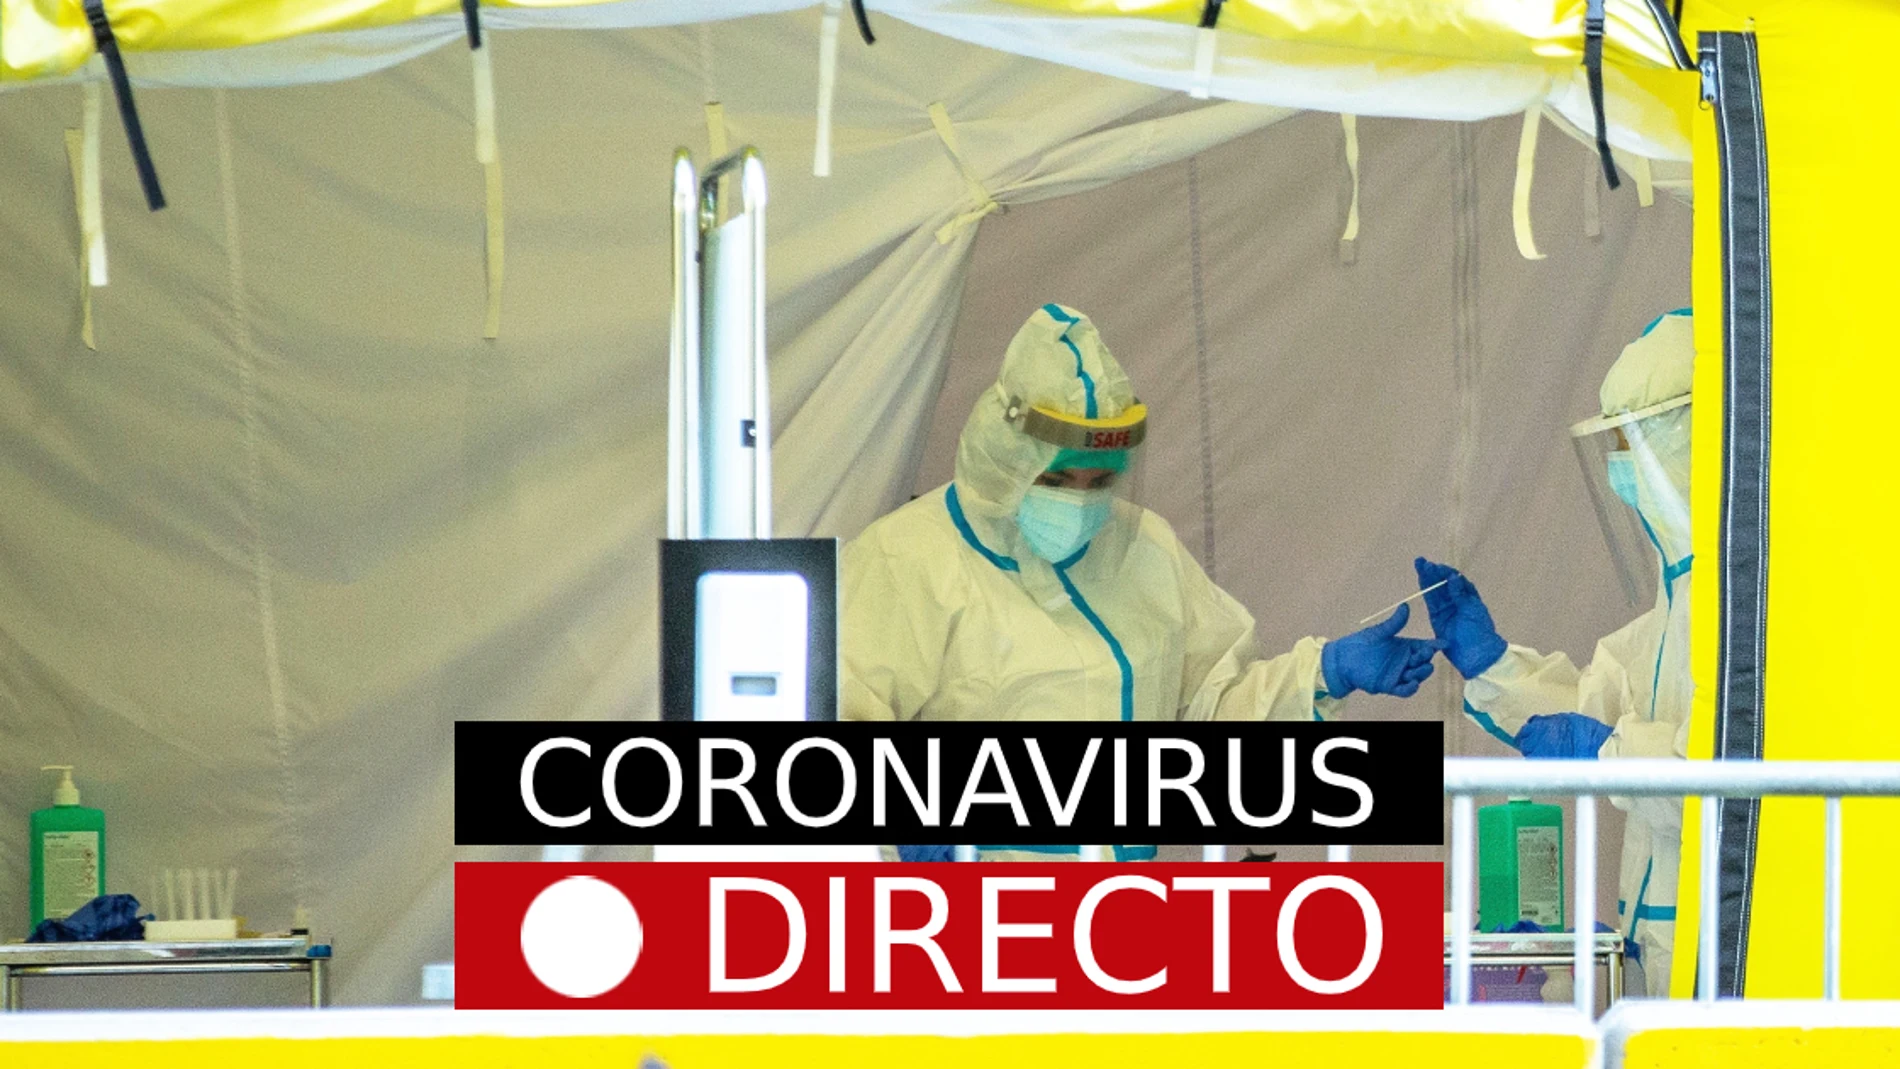 Coronavirus en España y Madrid: noticias de última hora del estado de alarma y confinamiento por COVID-19, EN DIRECTO